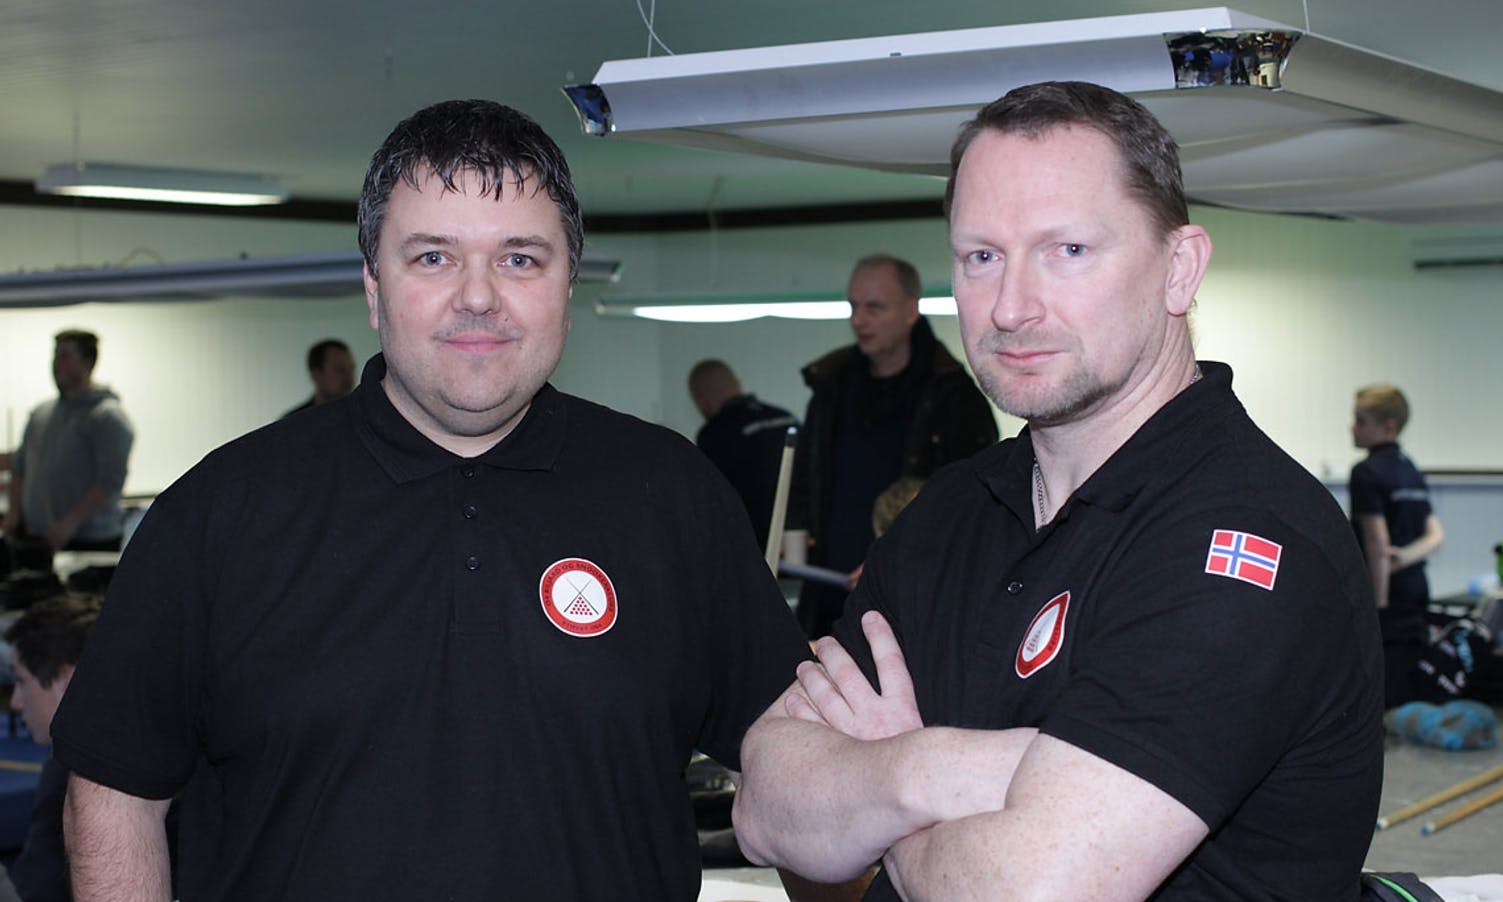 Reiar møtte klubbkamerat Jan Helge i første kamp. (Foto: KVB)